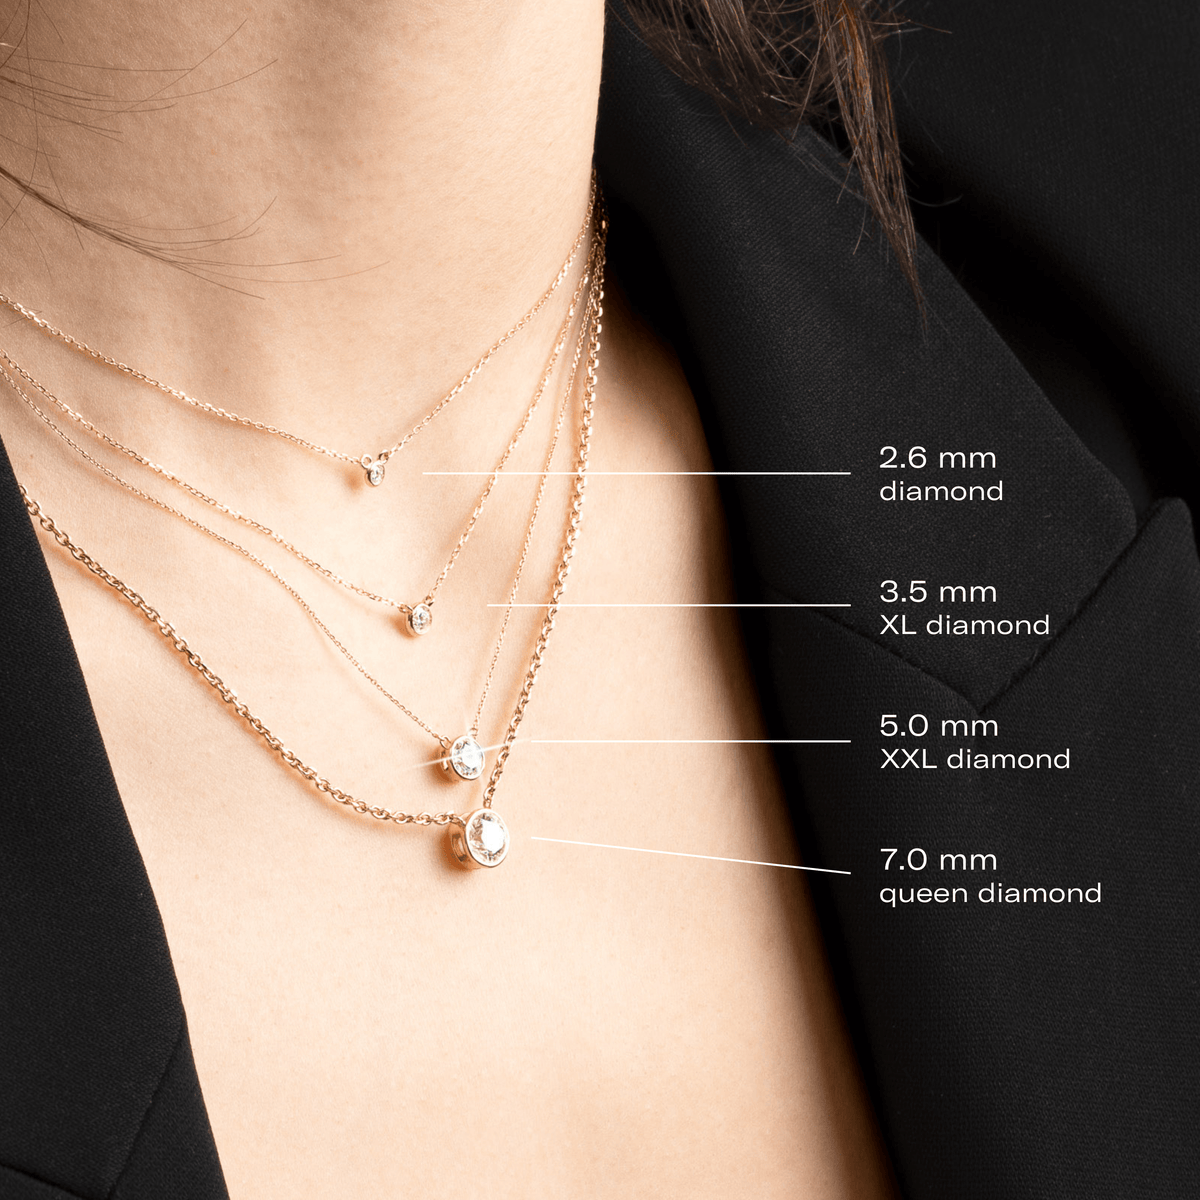 Versatile Single line American Diamond Necklace – 𝗔𝘀𝗽 𝗙𝗮𝘀𝗵𝗶𝗼𝗻  𝗝𝗲𝘄𝗲𝗹𝗹𝗲𝗿𝘆